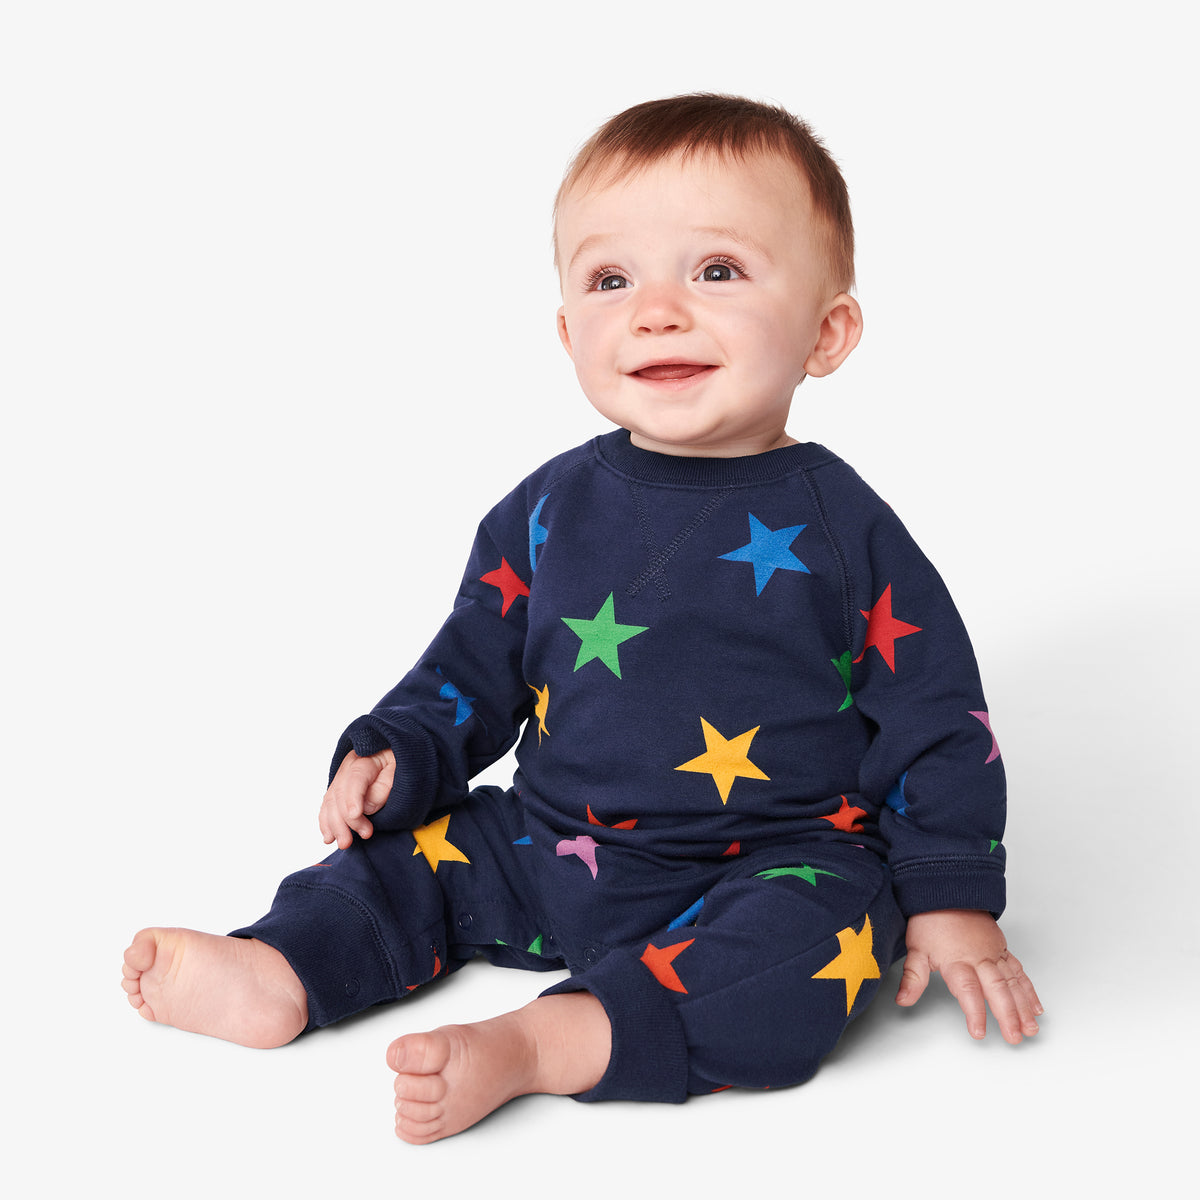 Beschrijving bellen Emulatie Baby sweatshirt romper in rainbow star | Primary.com